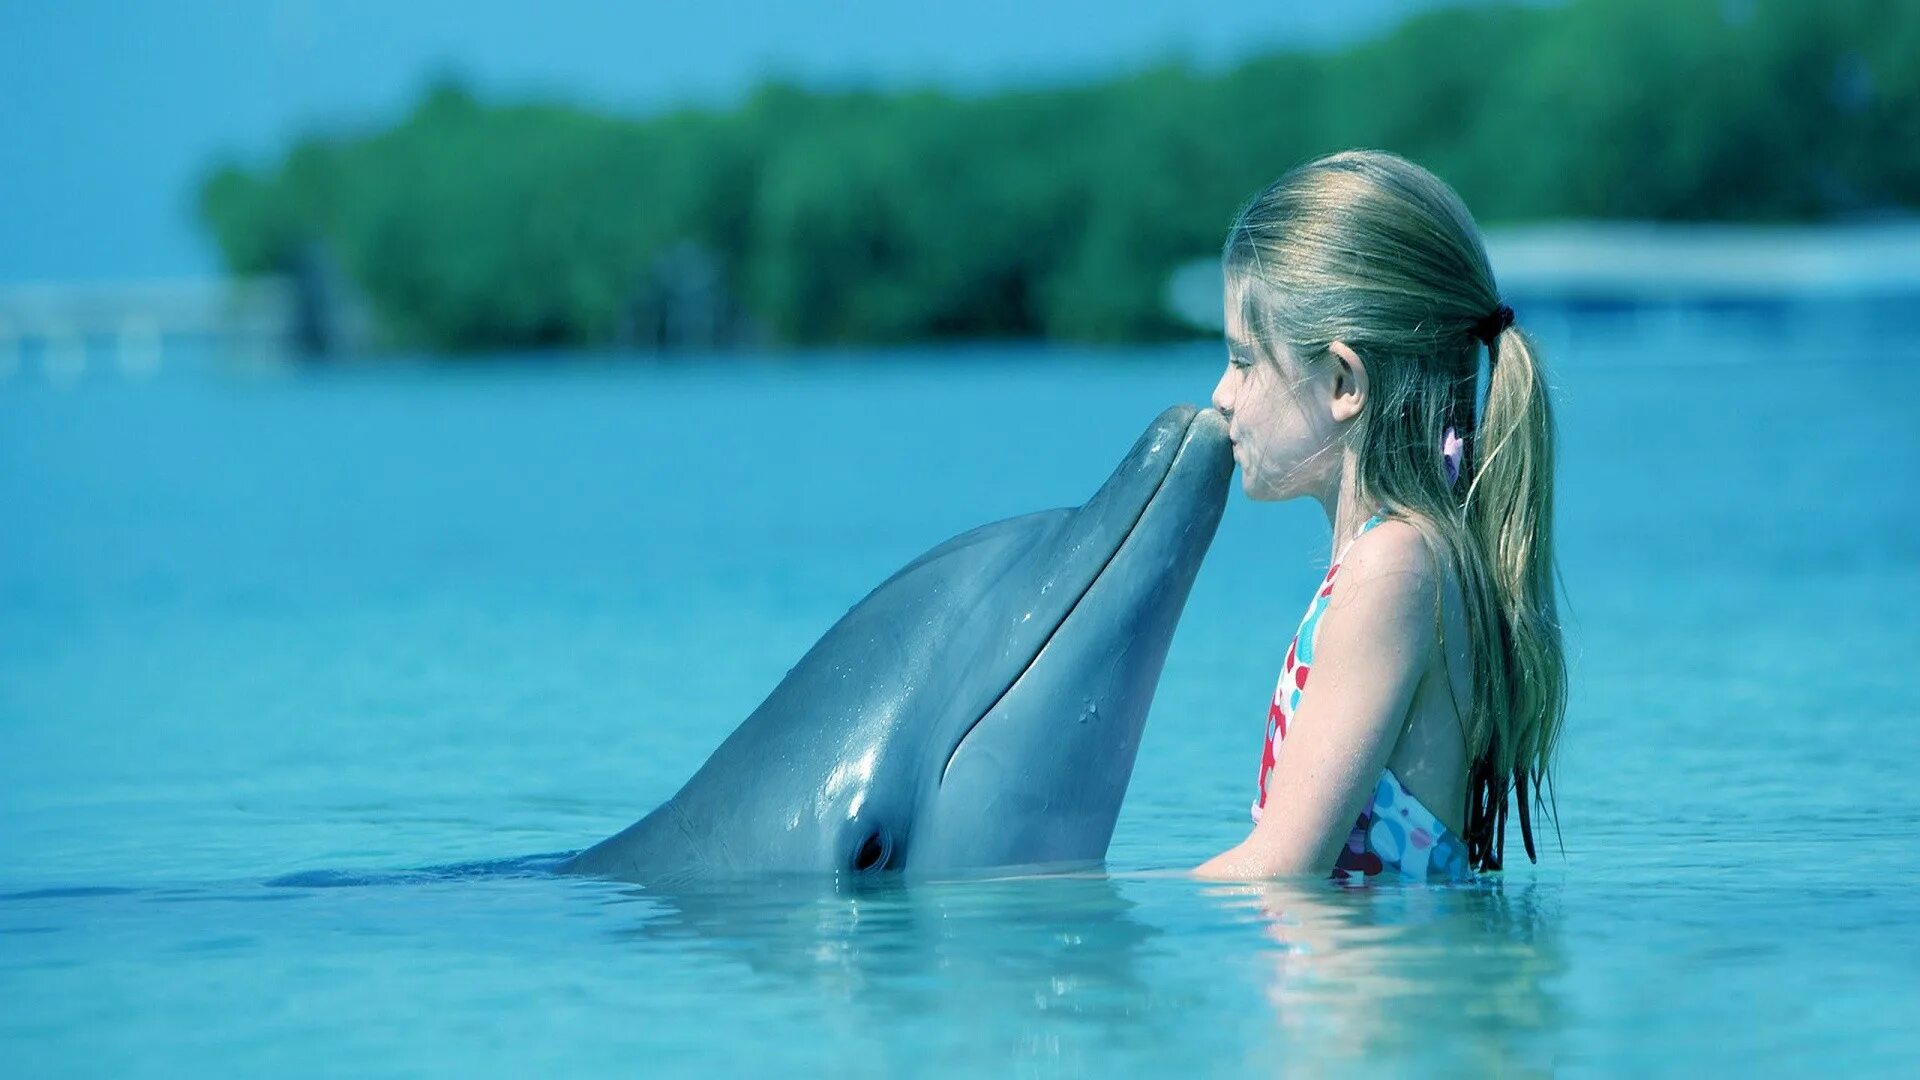 Леночка дельфин. Дельфины. Дельфины в море. Фото дельфина. Дельфин в воде.